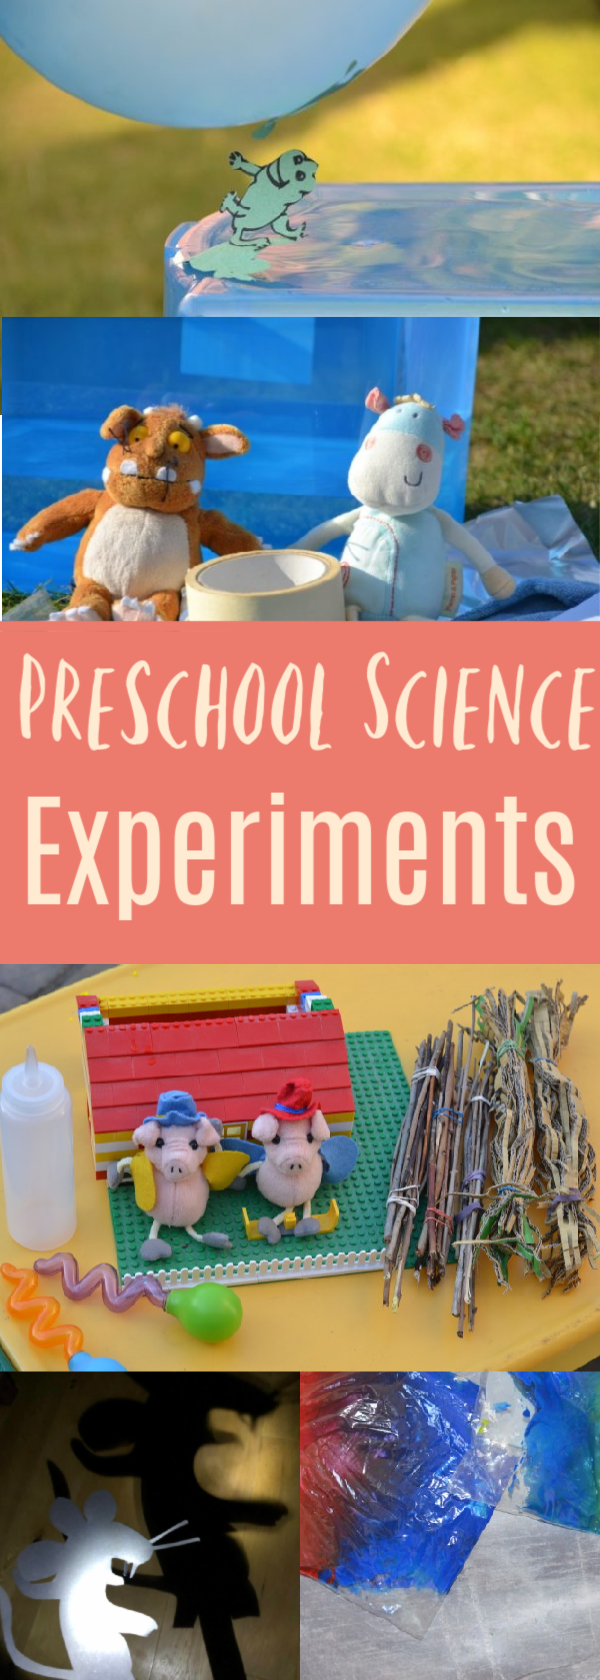 Preschool Science Experiments and Activities